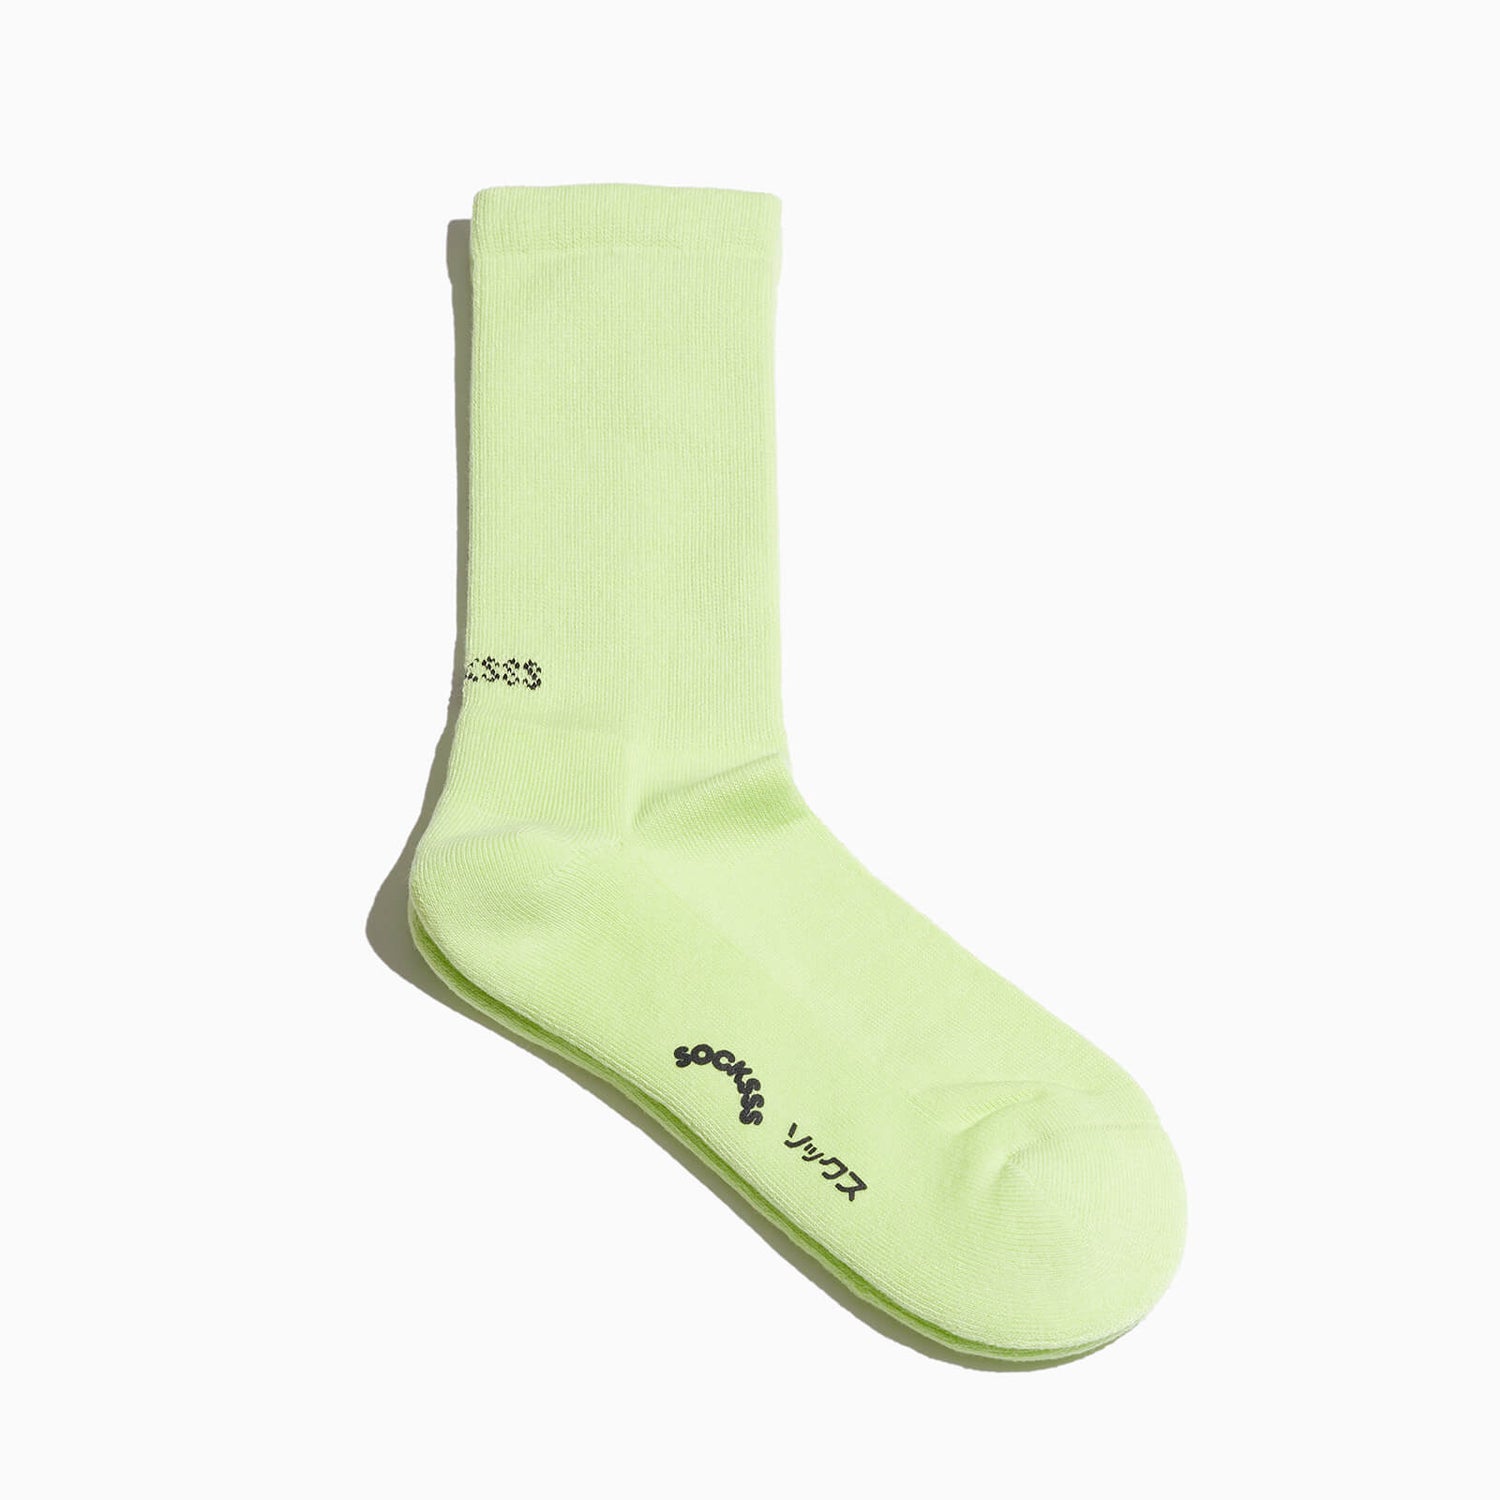 SOCKSSS Men's Tennis Solid Socks - Sour Apple - EU 41-46/UK 7-11